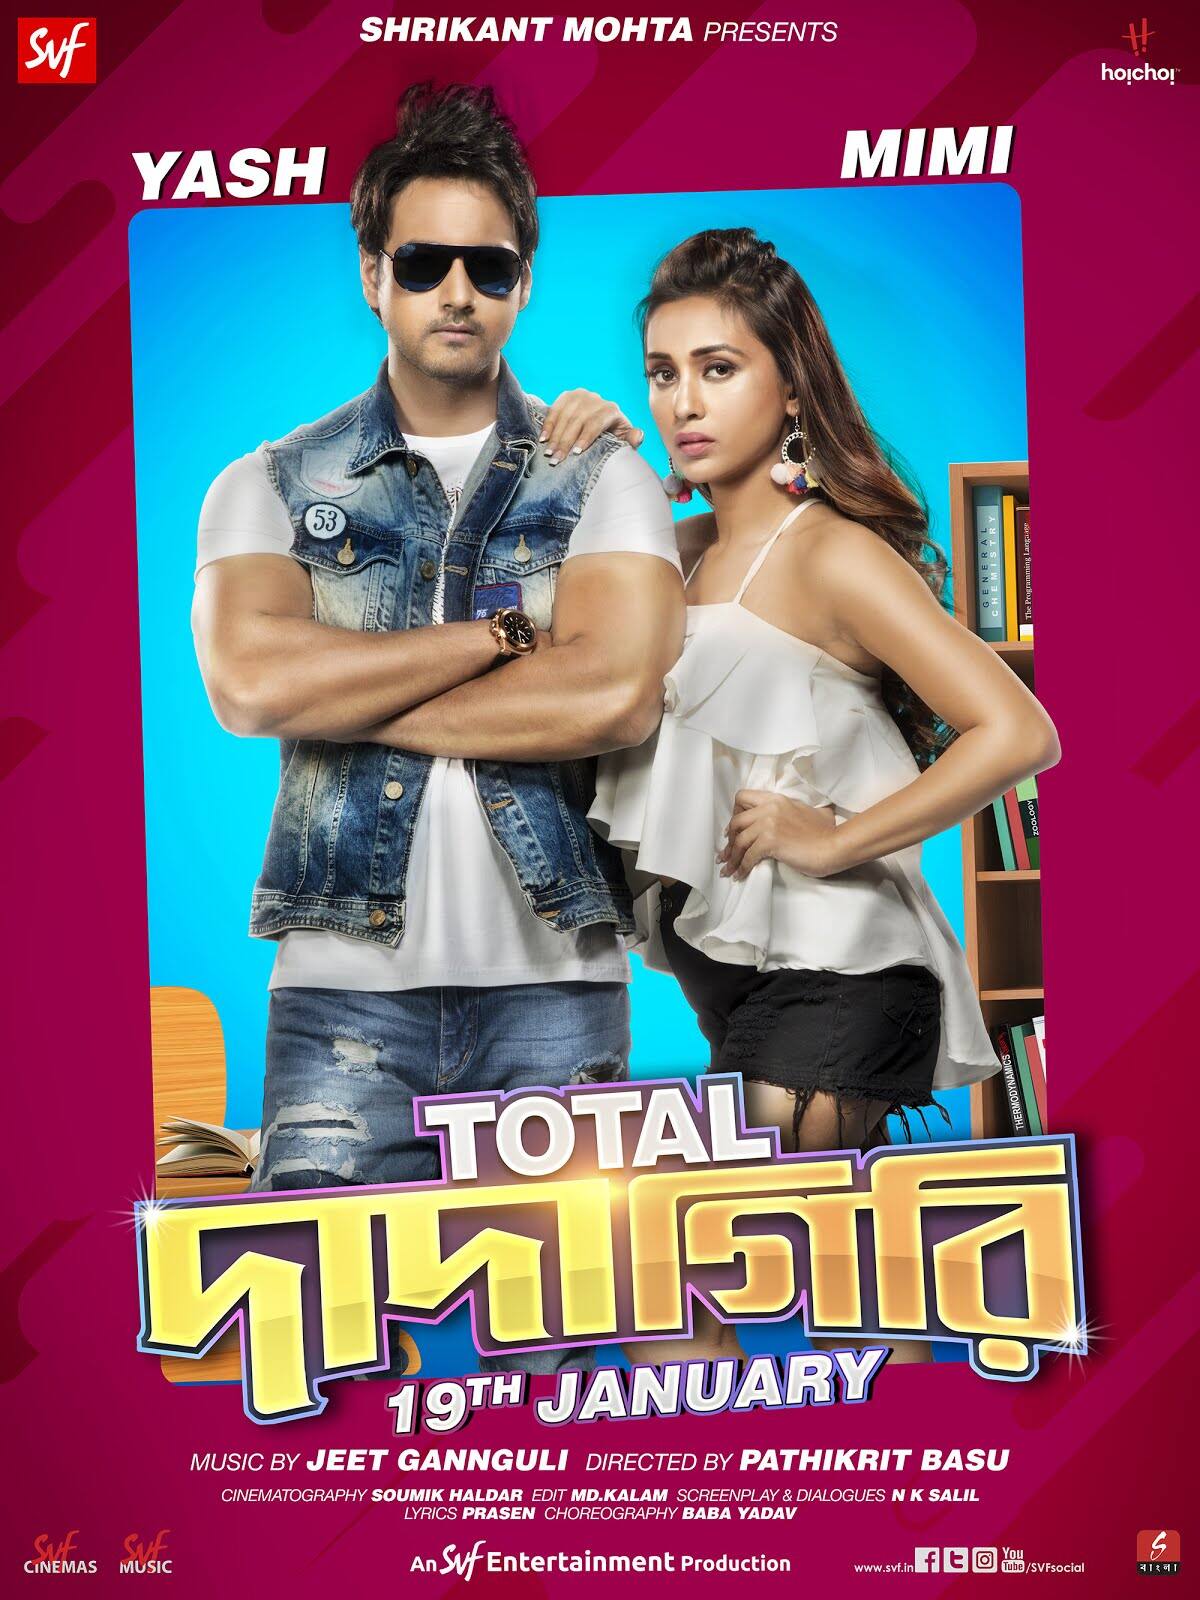 Total dadagiri full movie download